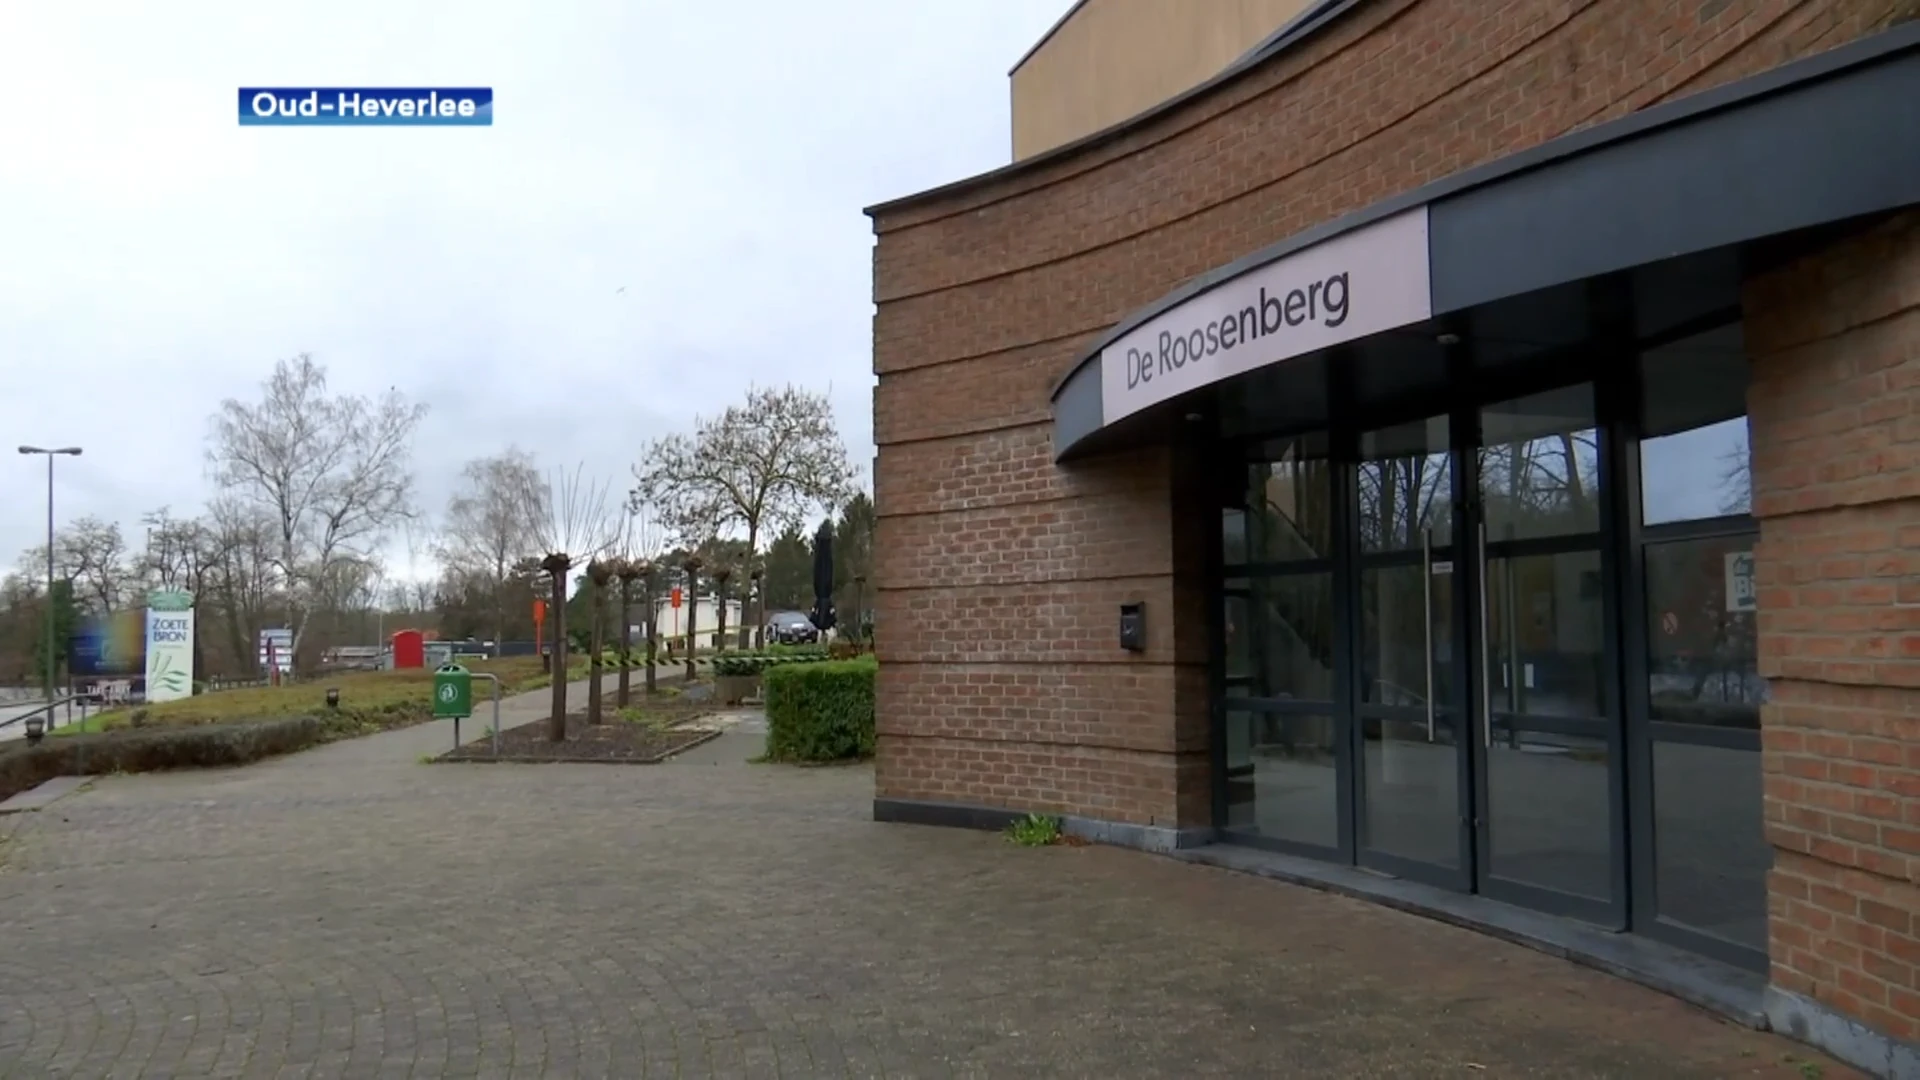 Niet voor iedereen dicht bij de deur, maar dan toch vaccinatiecentrum in Oud-Heverlee